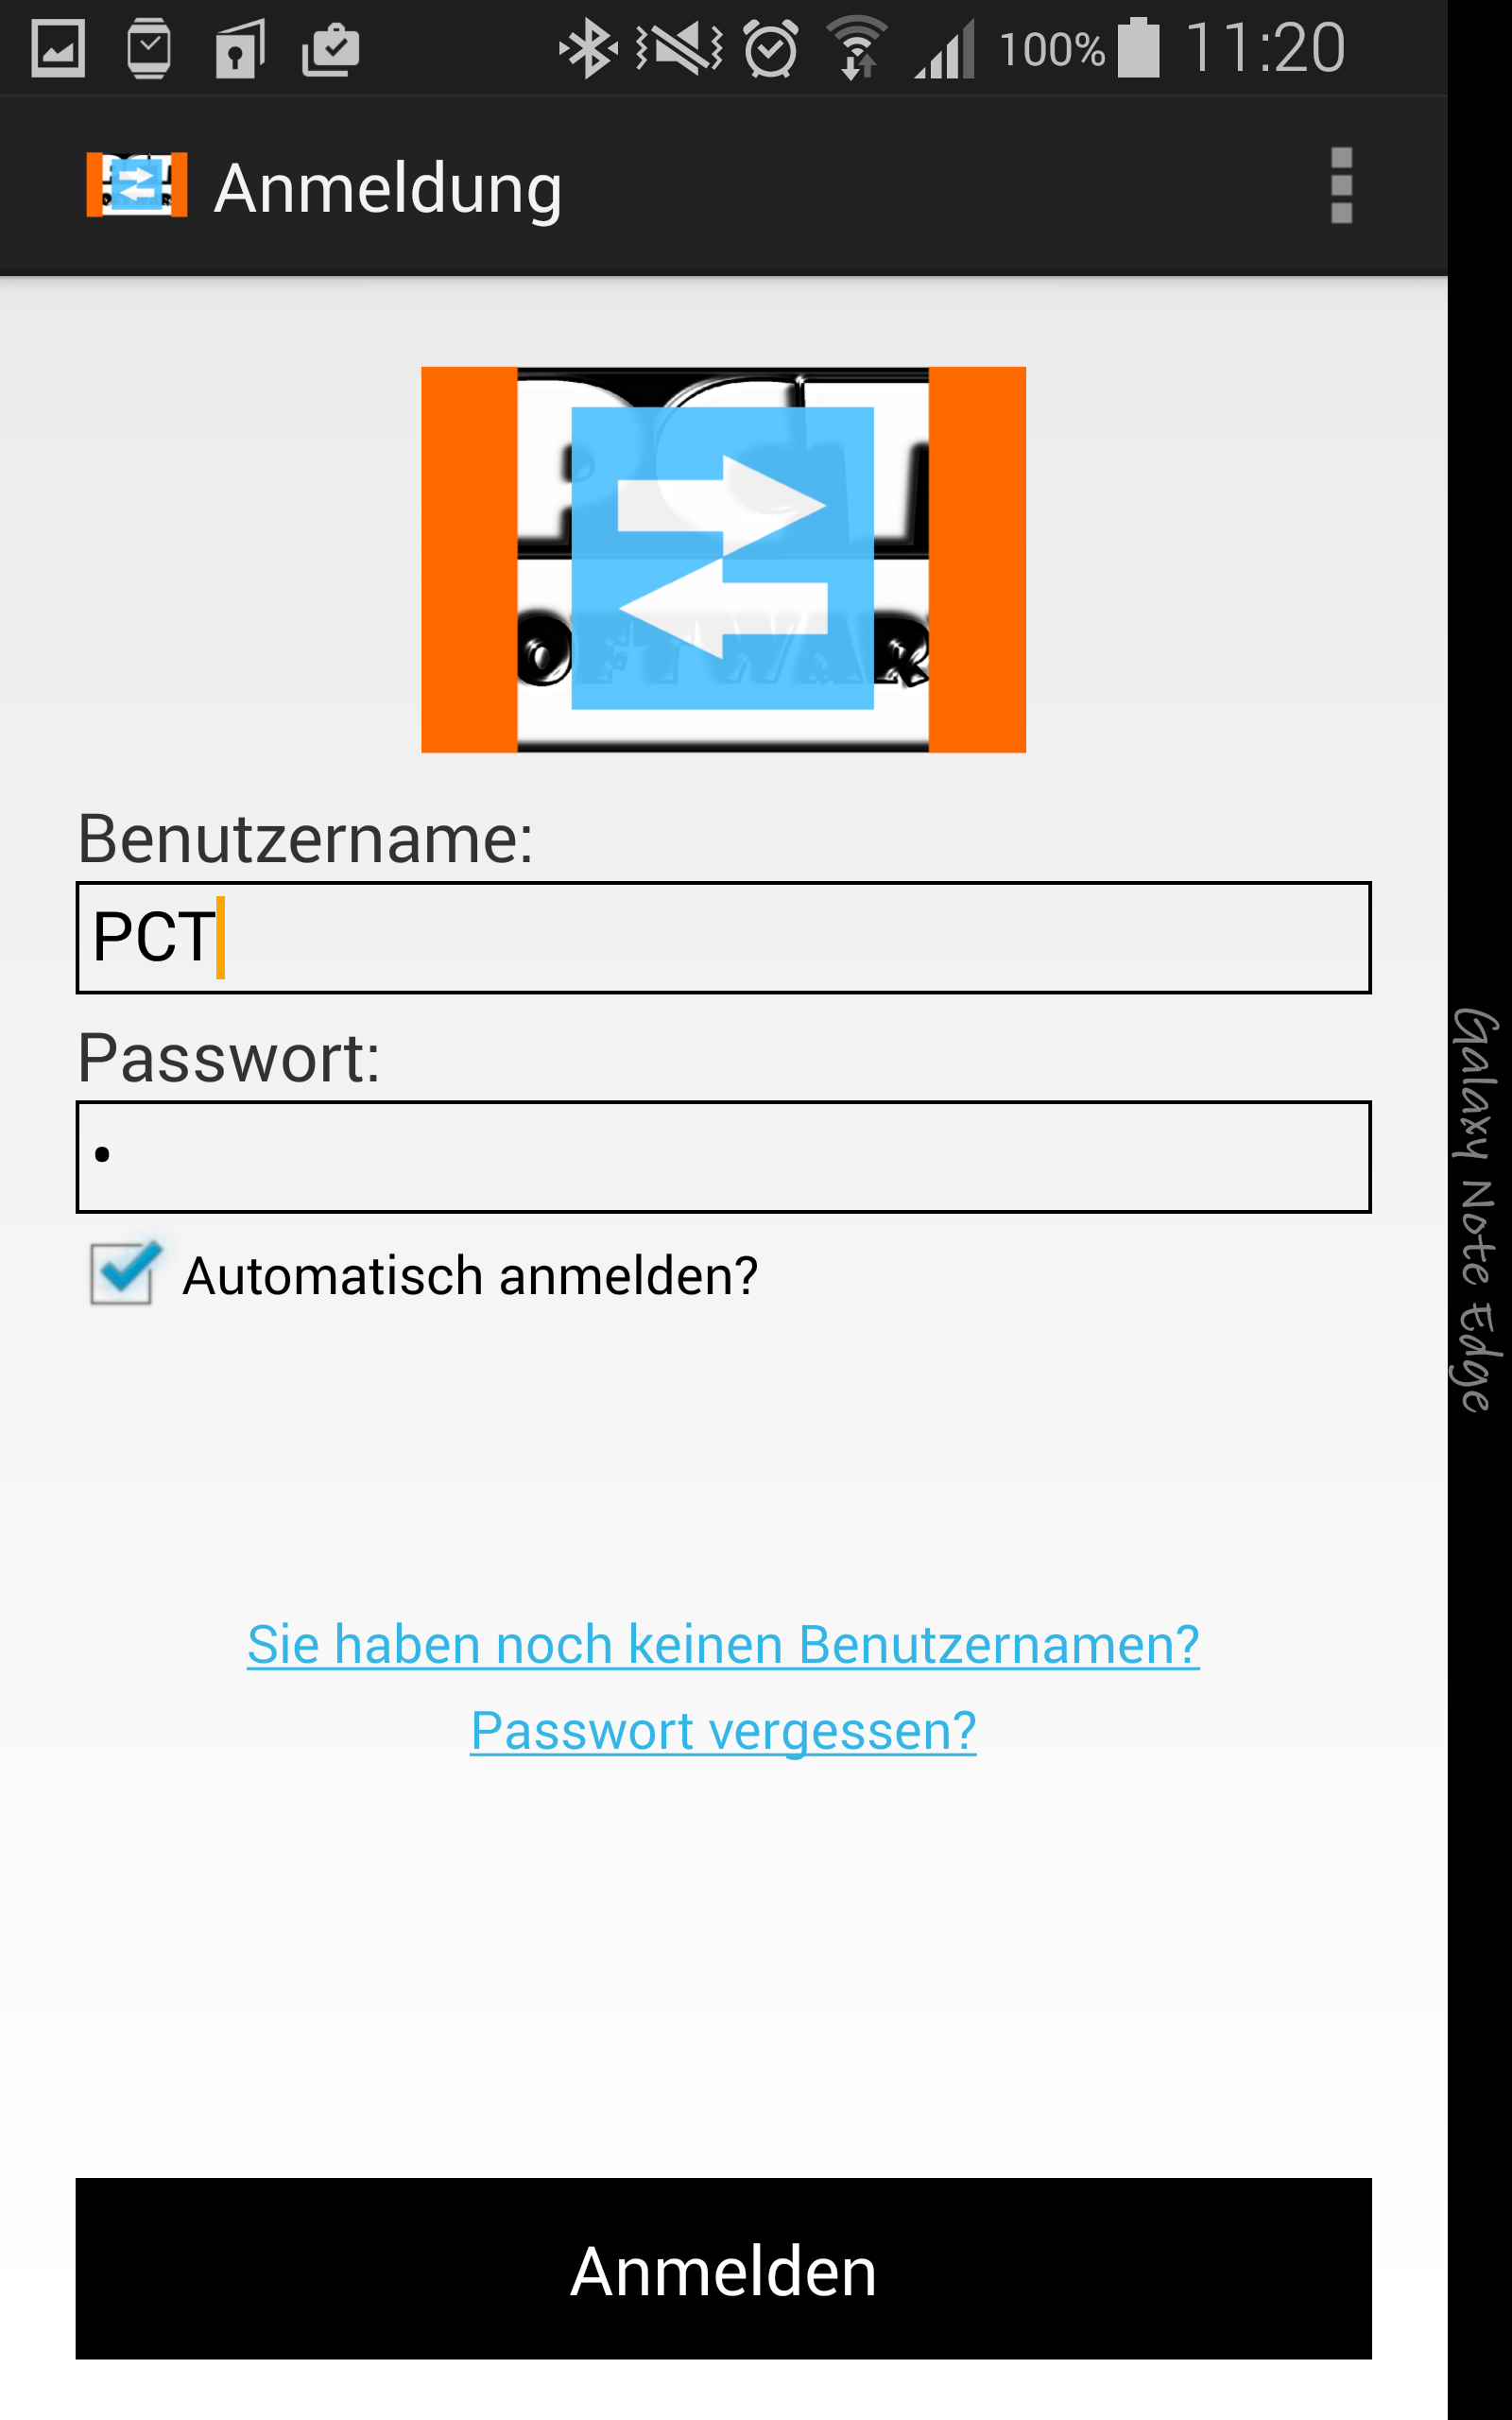 PCT-TDL - Client | Aufgaben anlegen und verwalten - Android App - Screenshot 2.